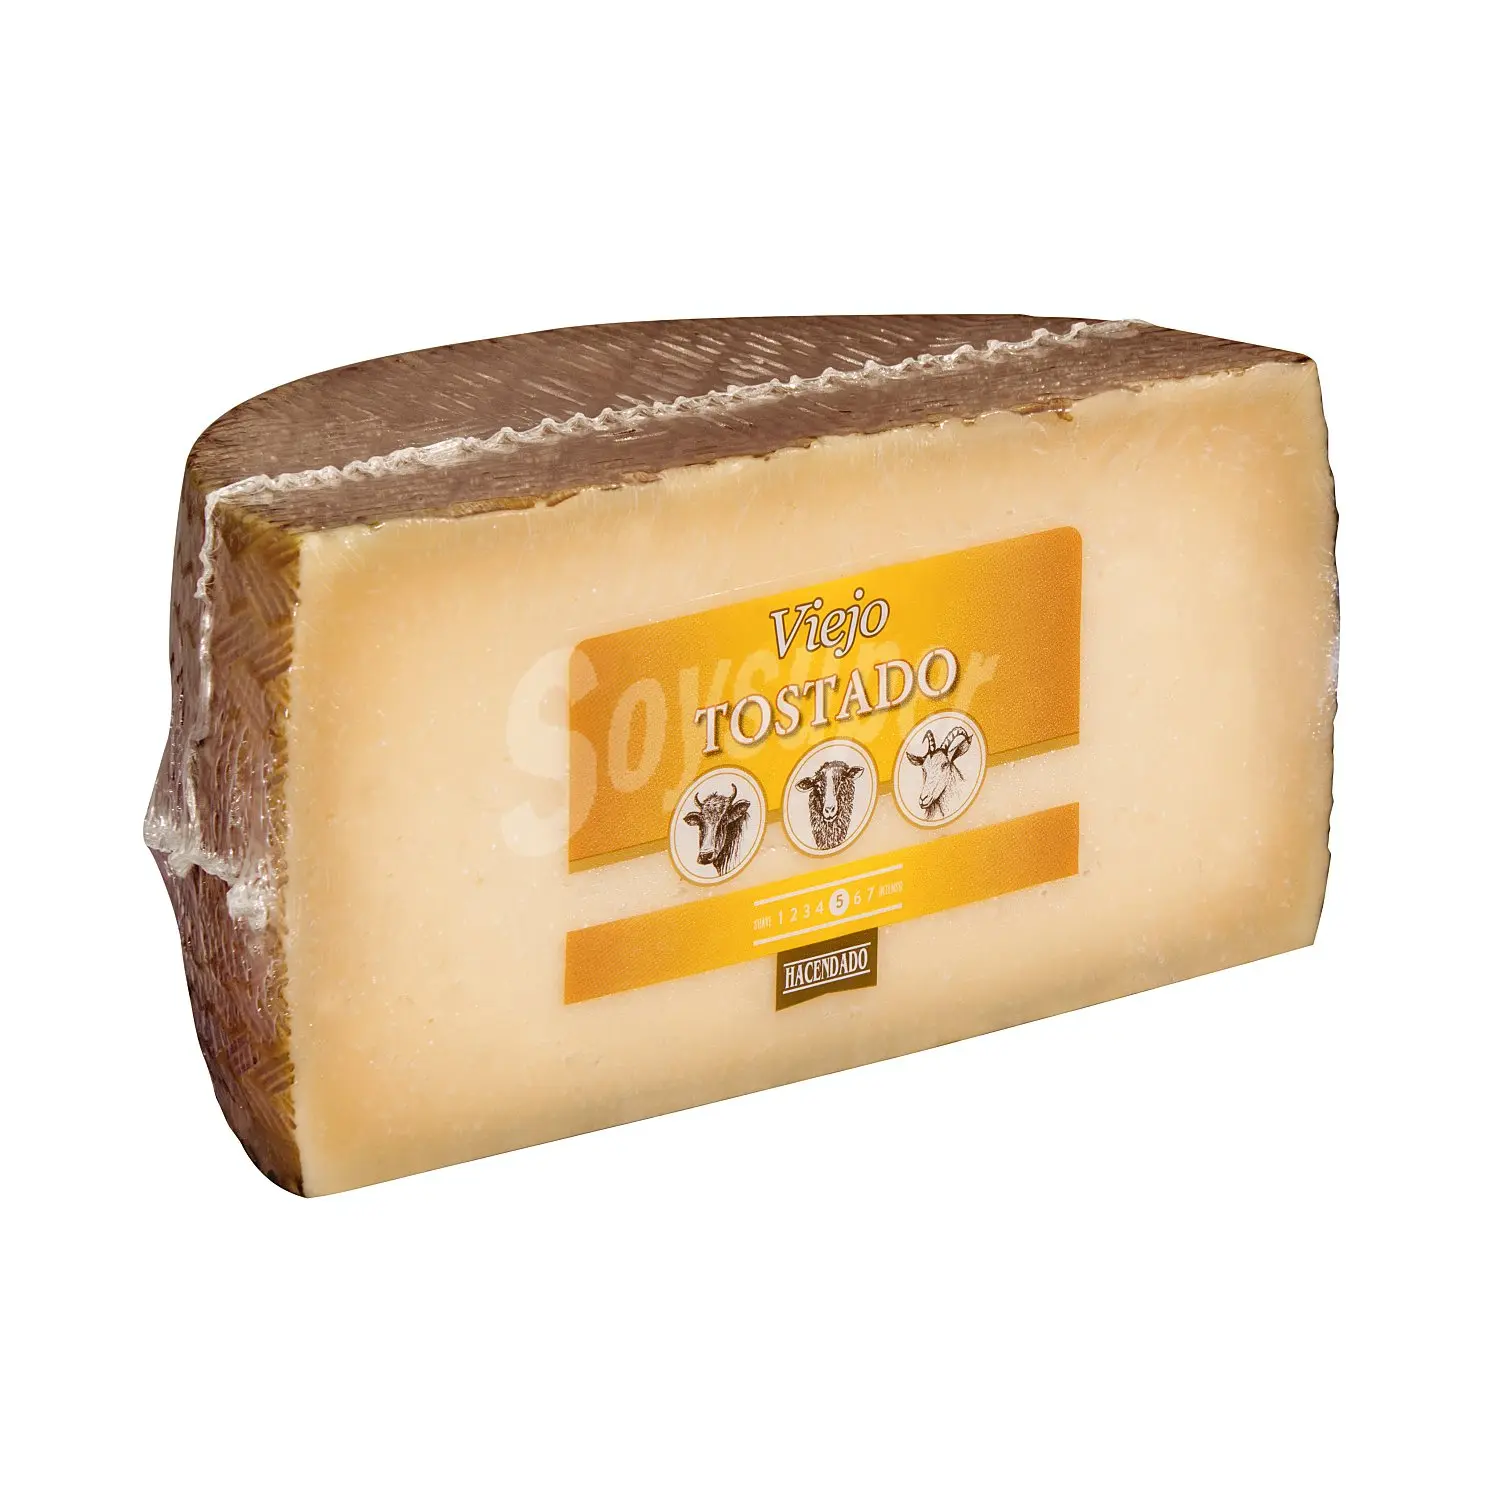 queso viejo tostado - Cuáles son los quesos viejos